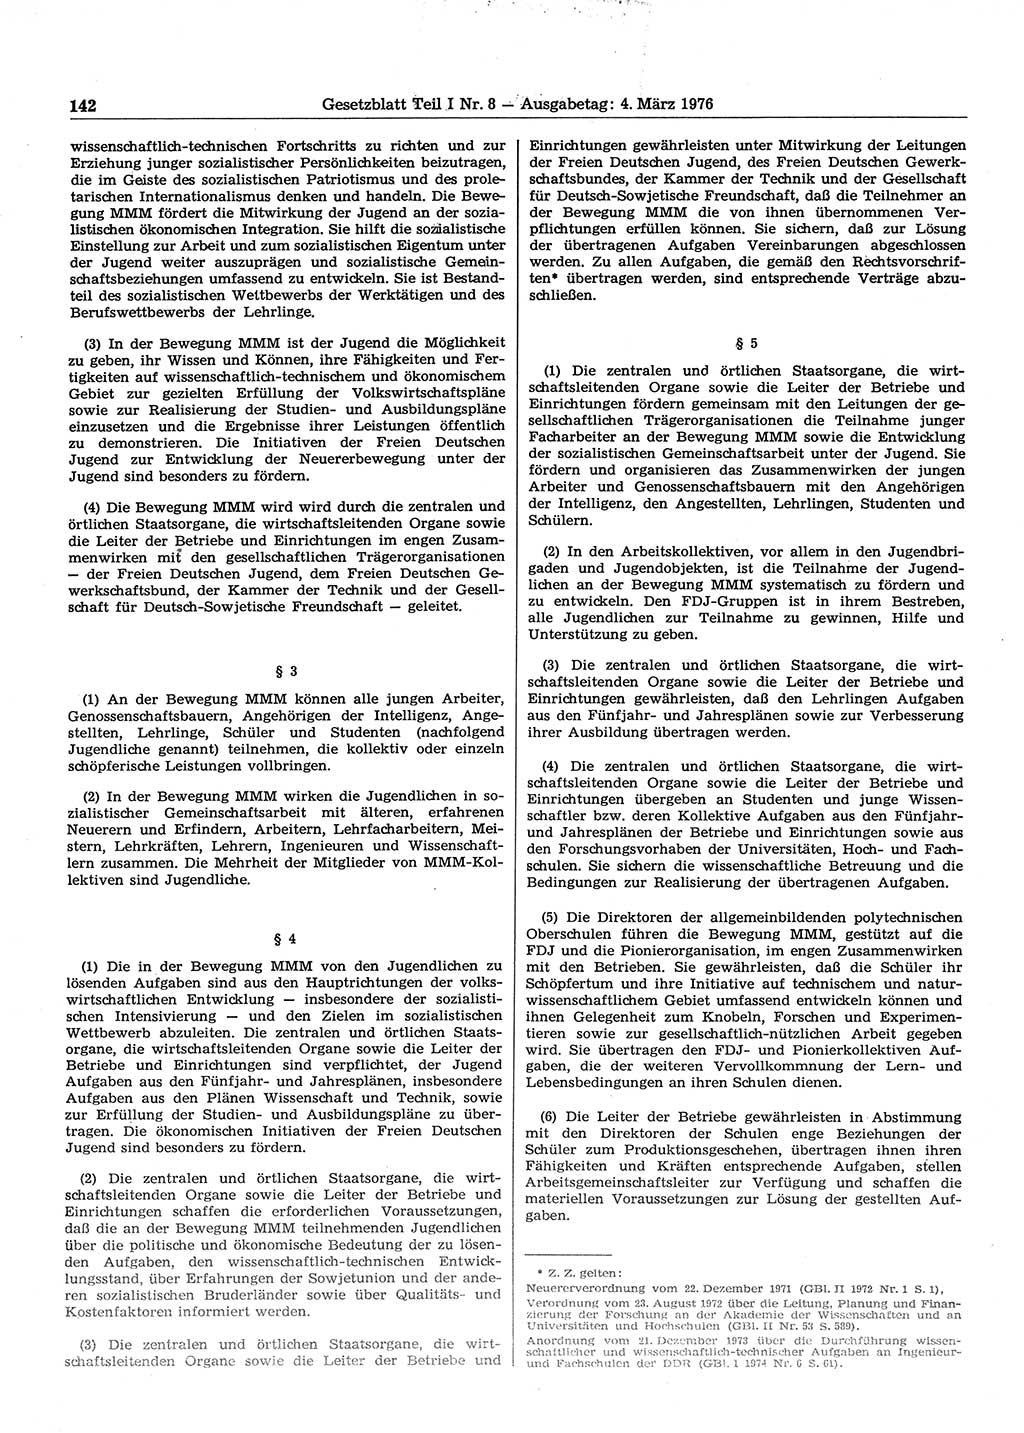 Gesetzblatt (GBl.) der Deutschen Demokratischen Republik (DDR) Teil Ⅰ 1976, Seite 142 (GBl. DDR Ⅰ 1976, S. 142)